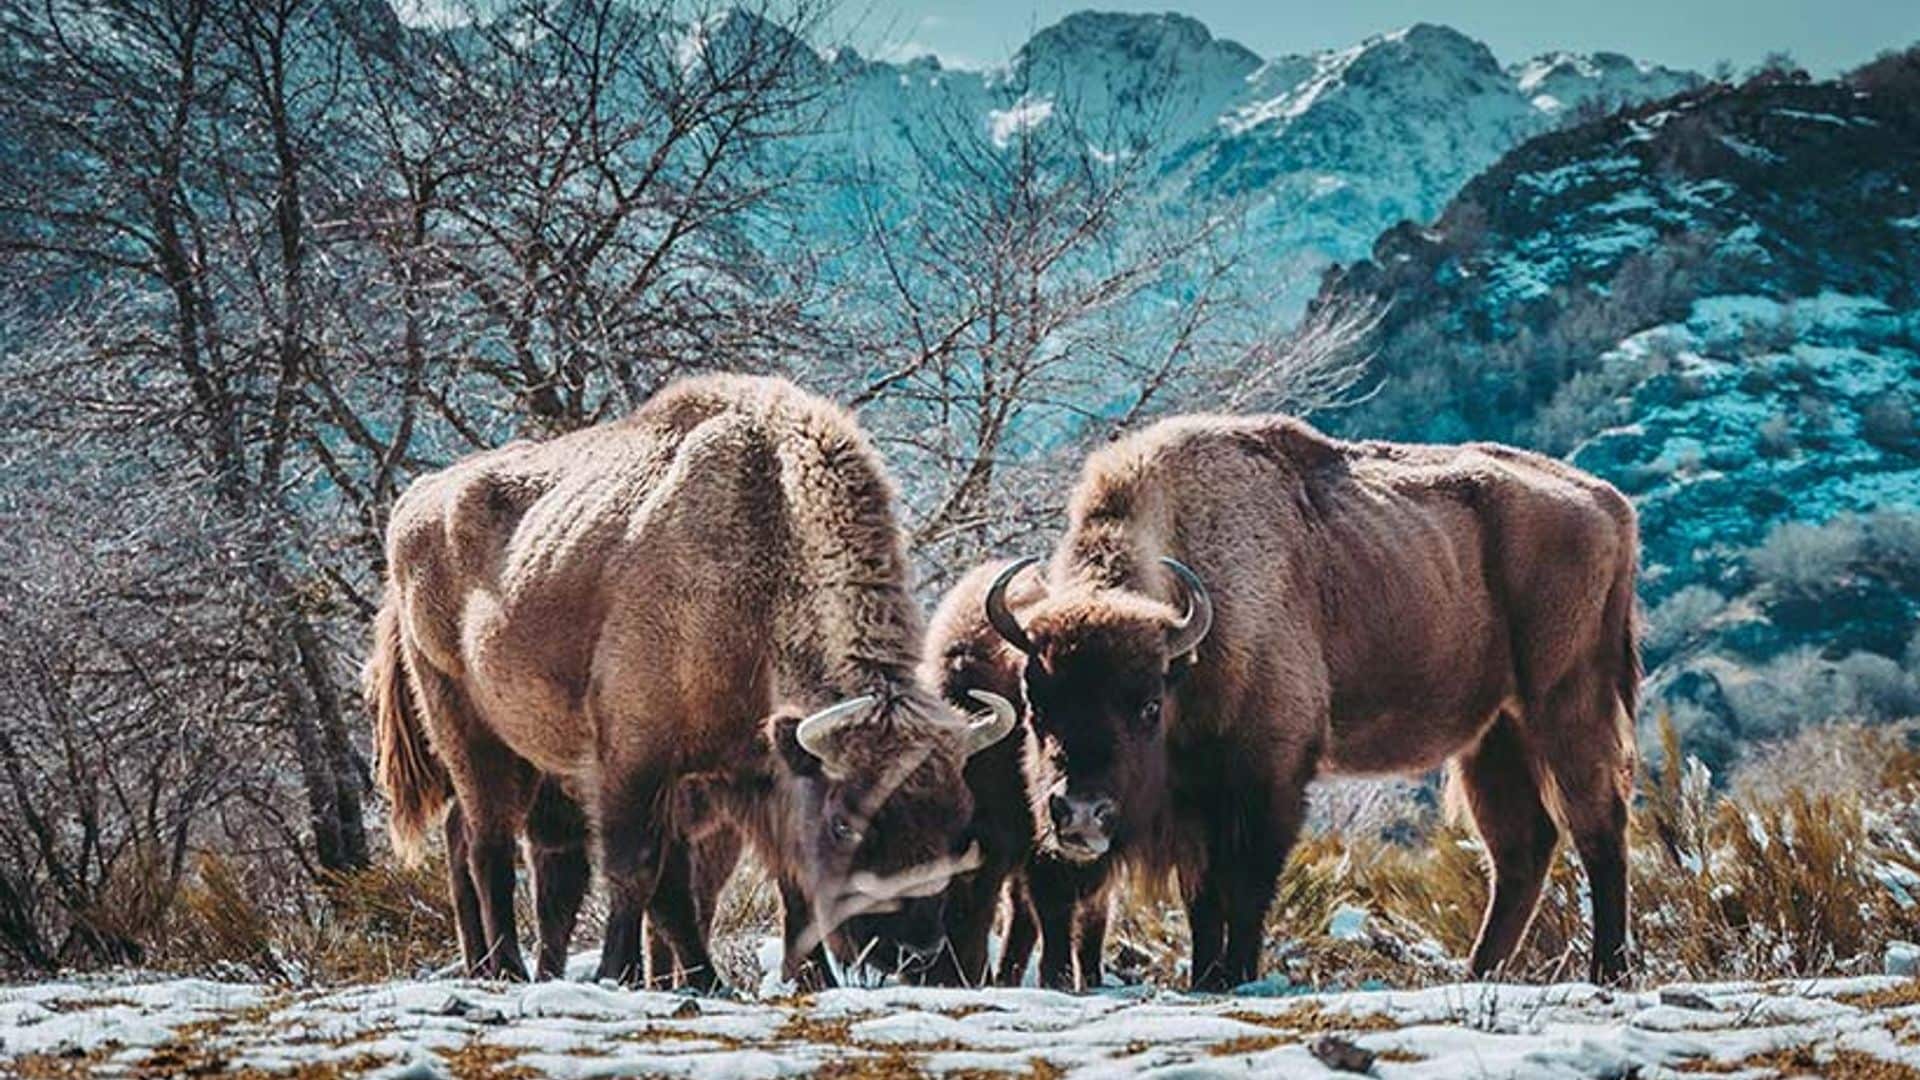 Safari por la montaña de Riaño en busca del bisonte europeo